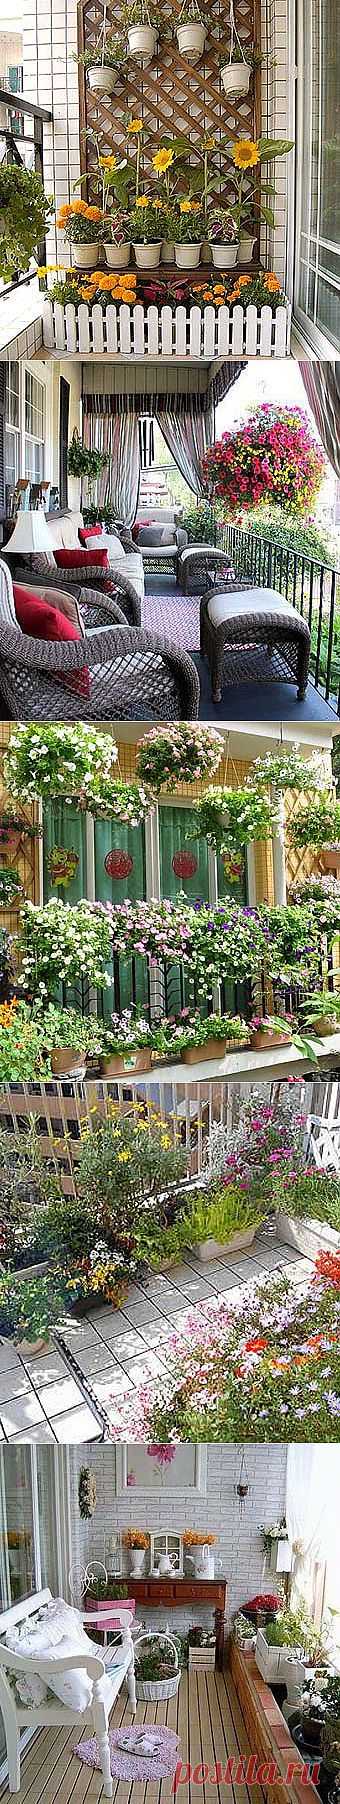 Цветы на балконе: 16 вариантов дизайна балкона - Учимся Делать Все Сами